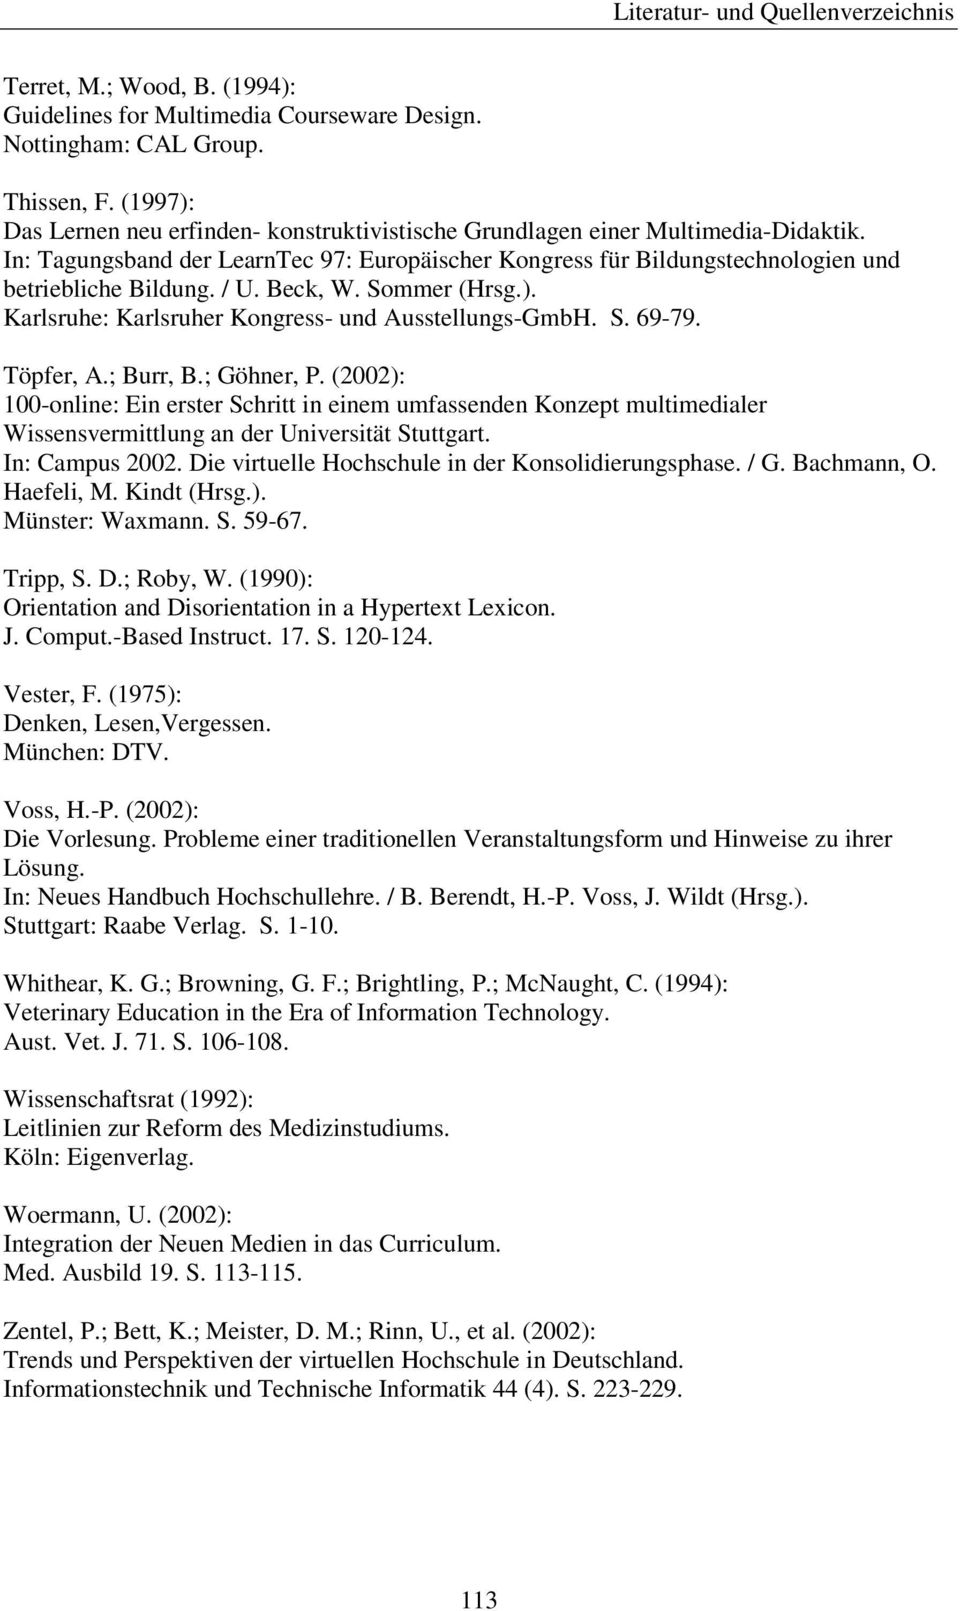 Töpfer, A.; Burr, B.; Göhner, P. (2002): 100-online: Ein erster Schritt in einem umfassenden Konzept multimedialer Wissensvermittlung an der Universität Stuttgart. In: Campus 2002.